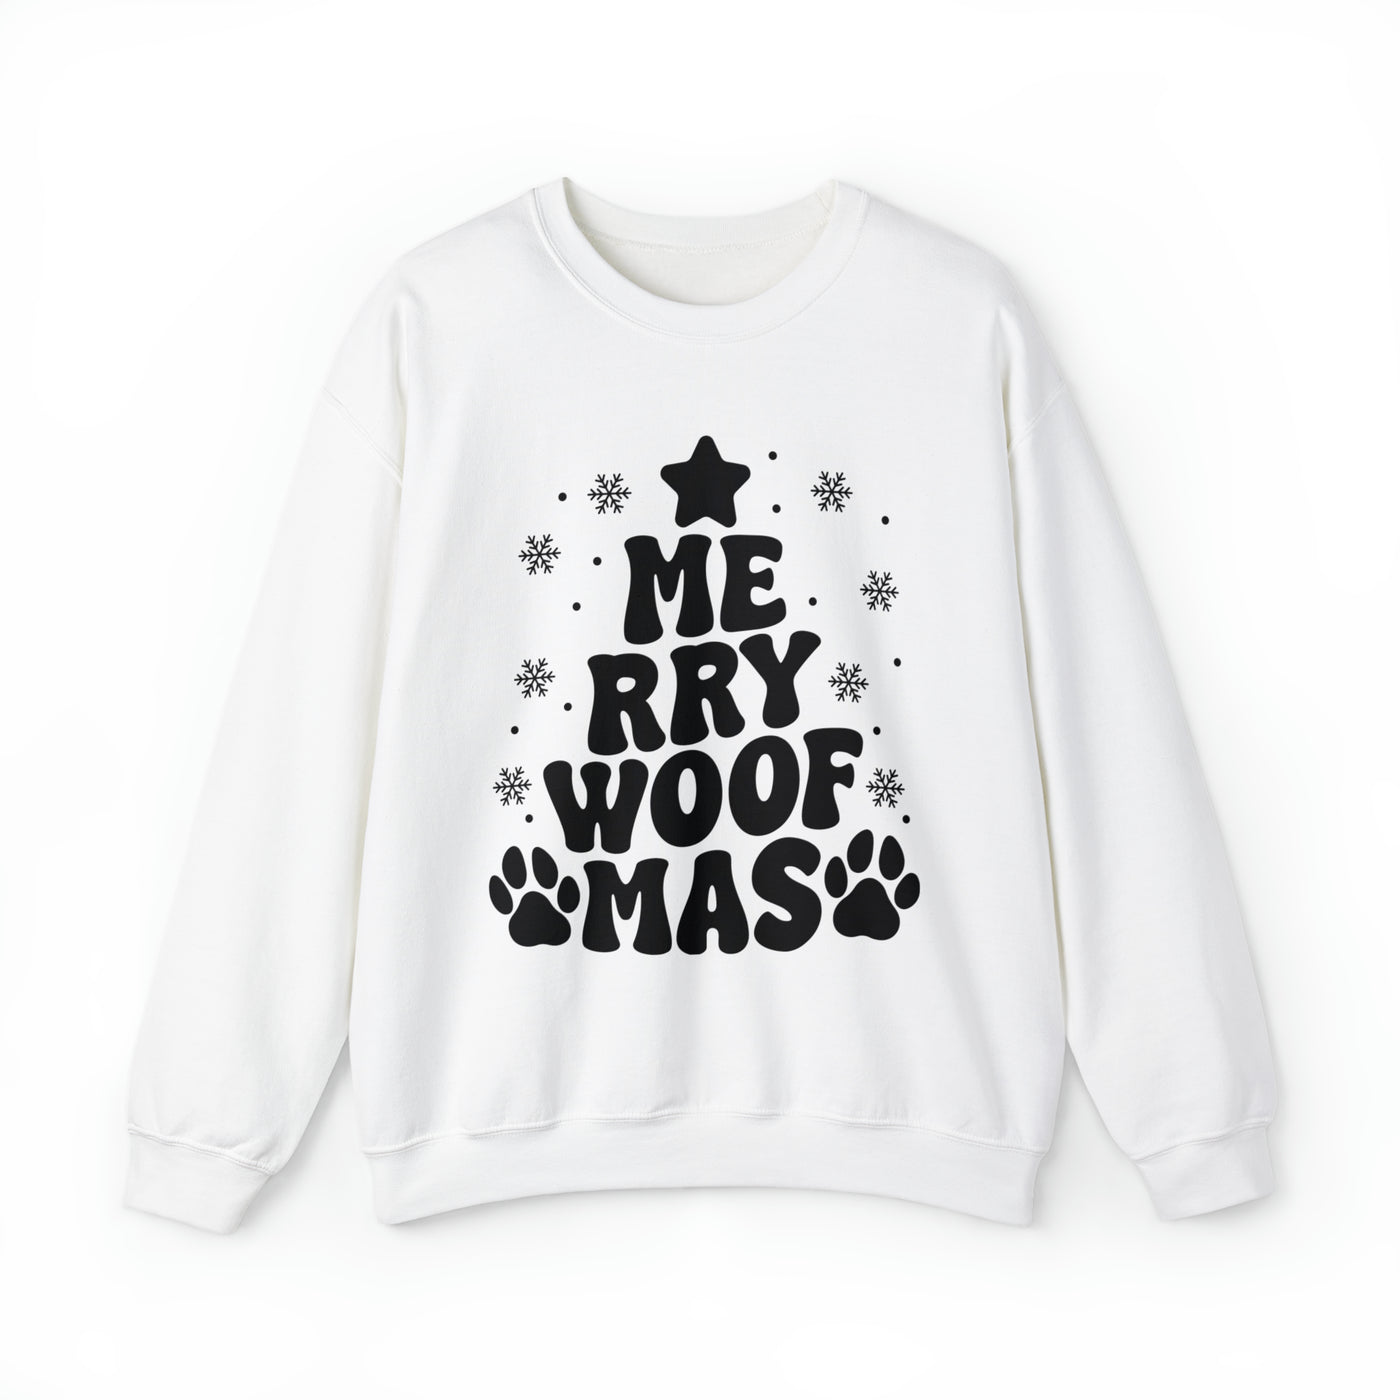 Merry Woofmas Tree Black Print Sweatshirt